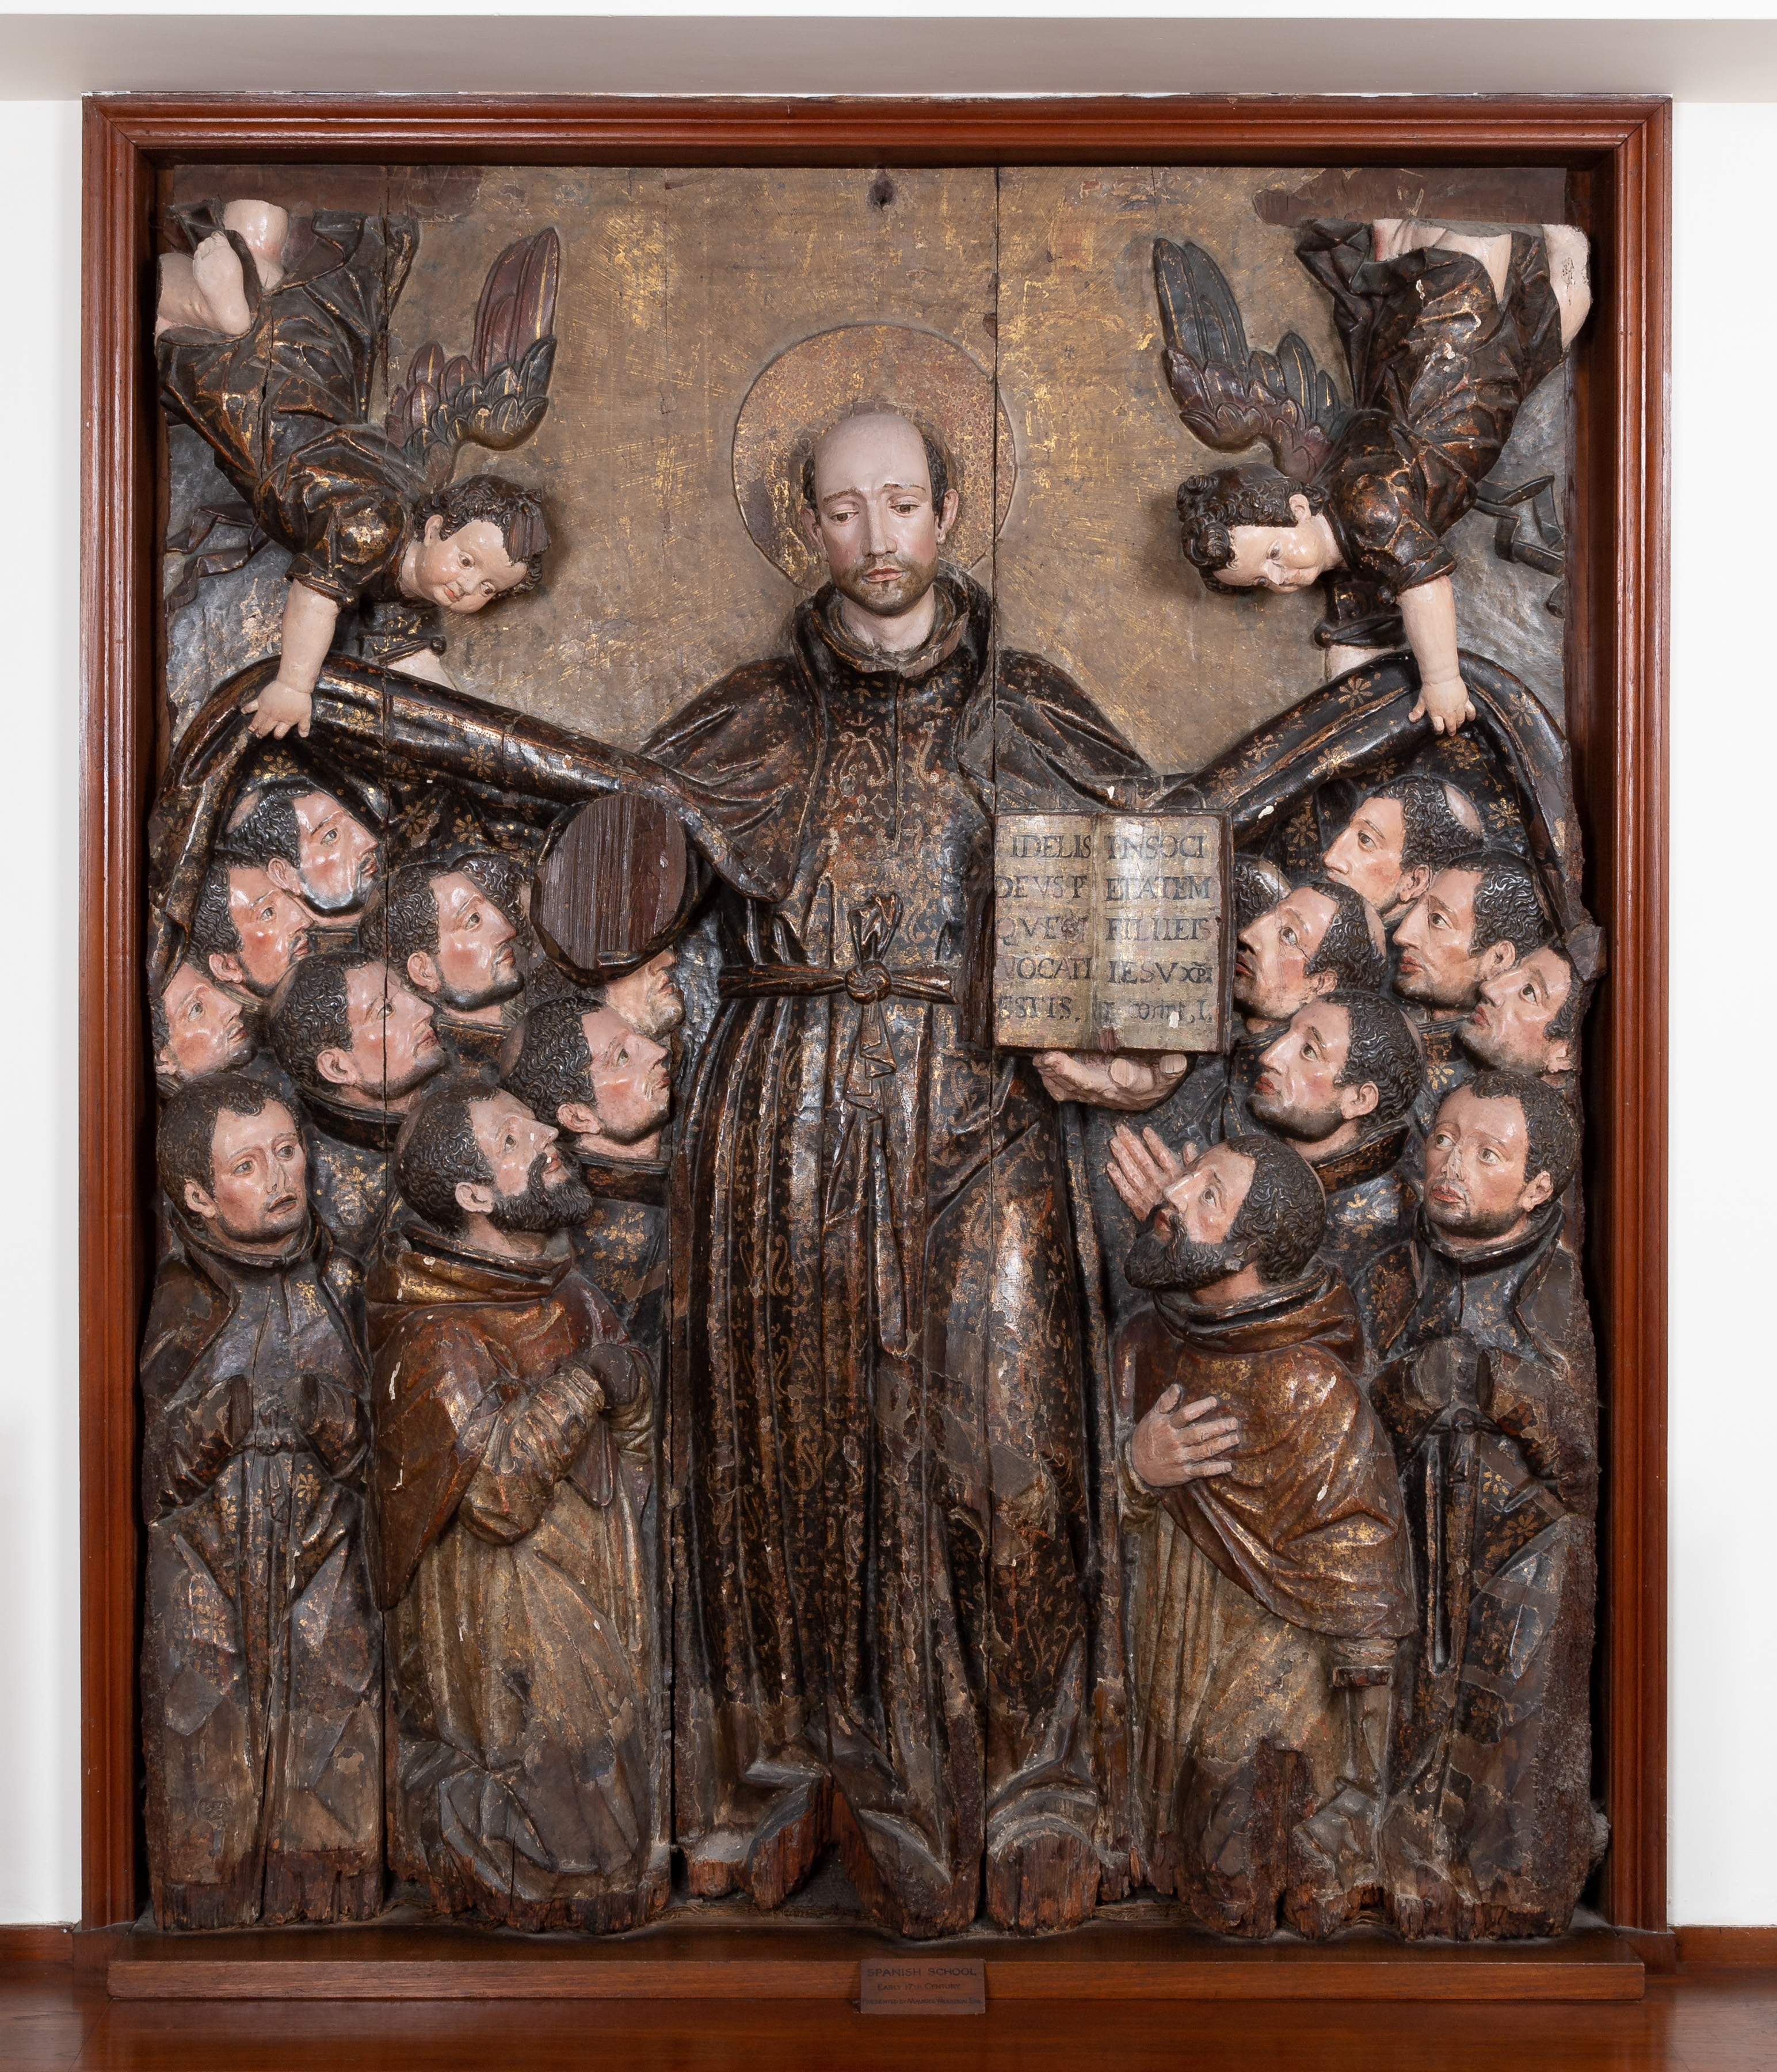 St Ignatius wood carving